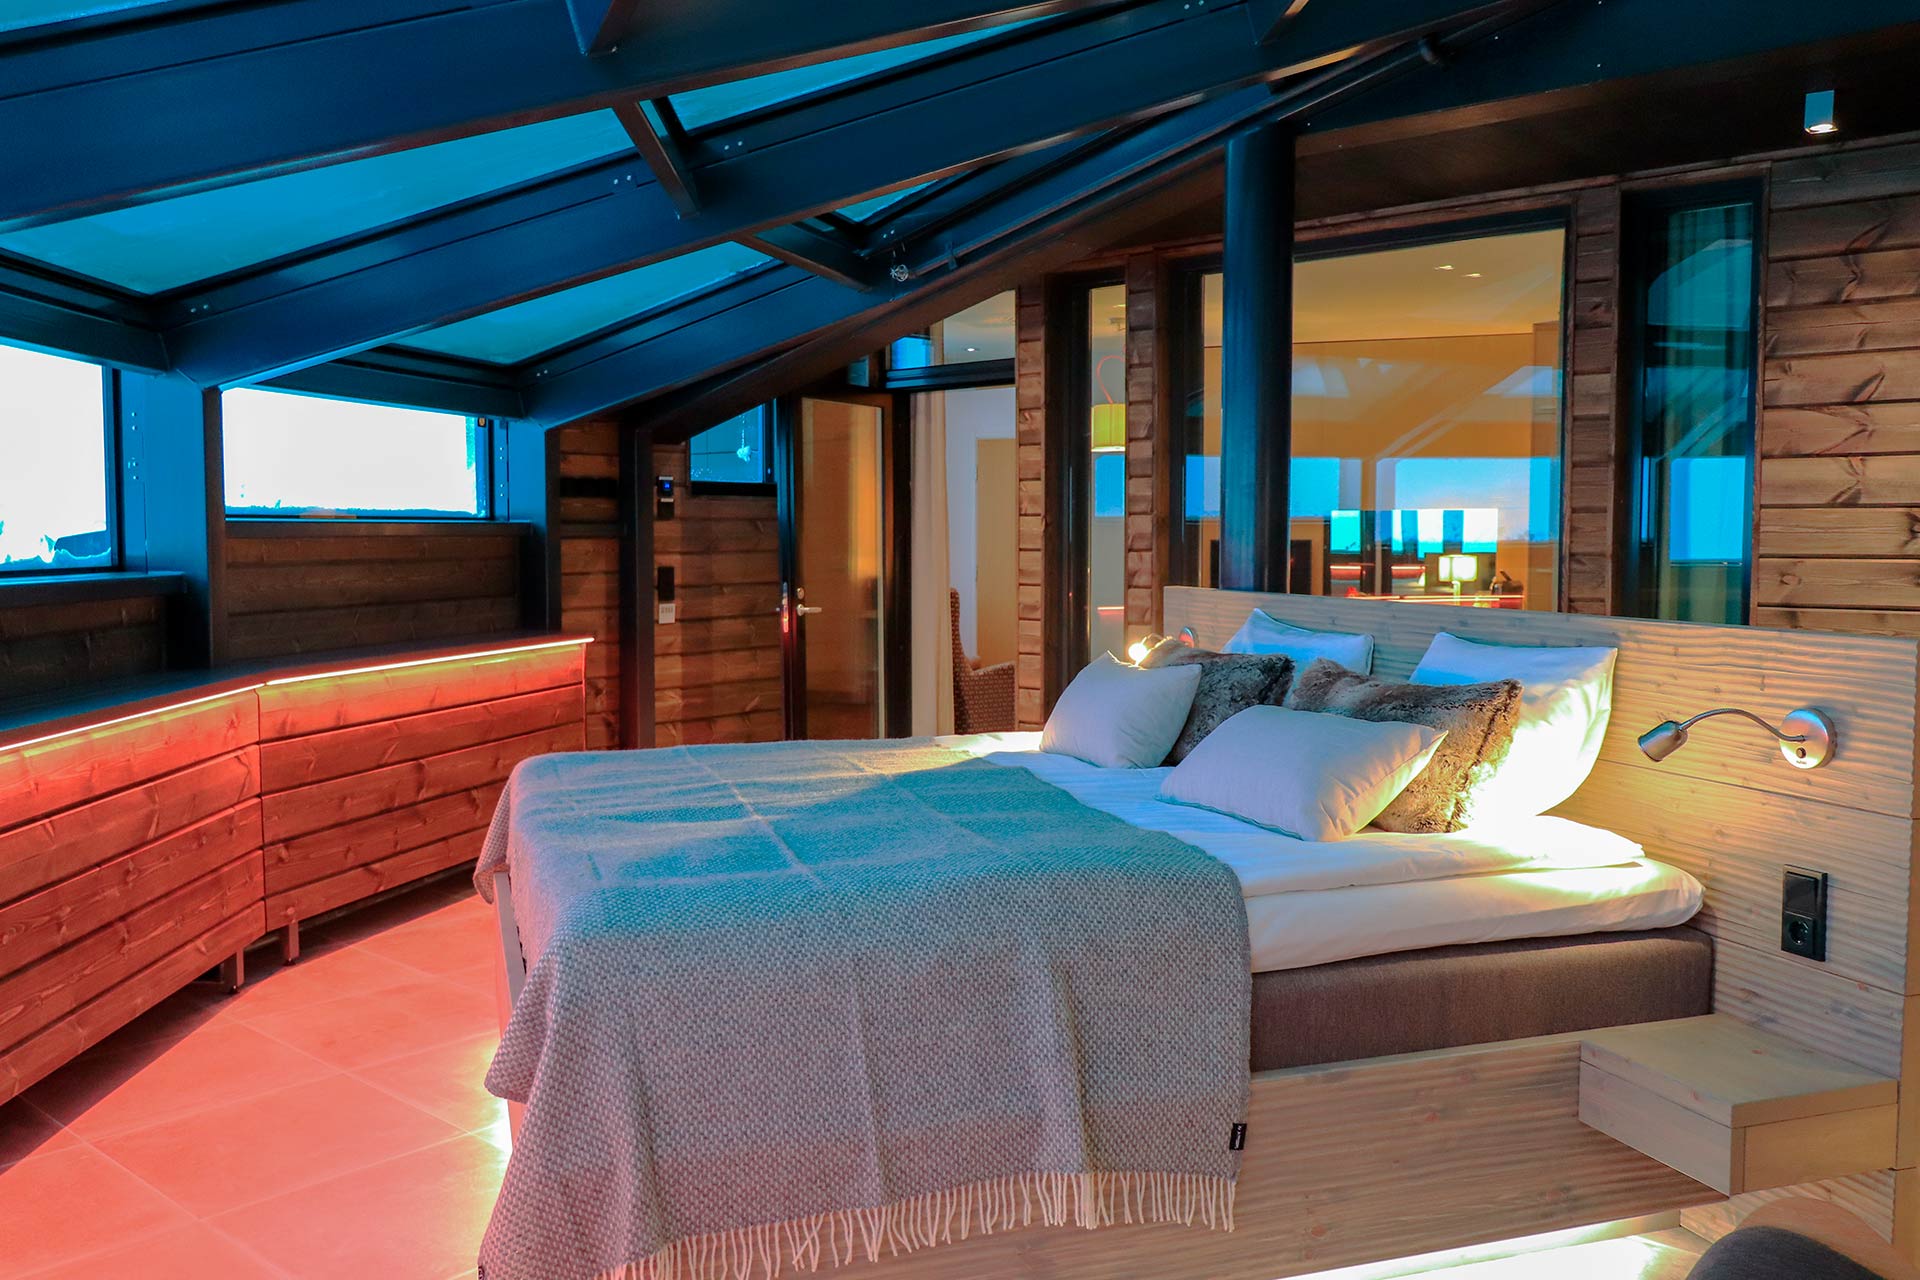 Uniikki Sky Suite hotellihuone Hotel Levi Panoramassa tarjoaa näkymät myös yötaivaalle.